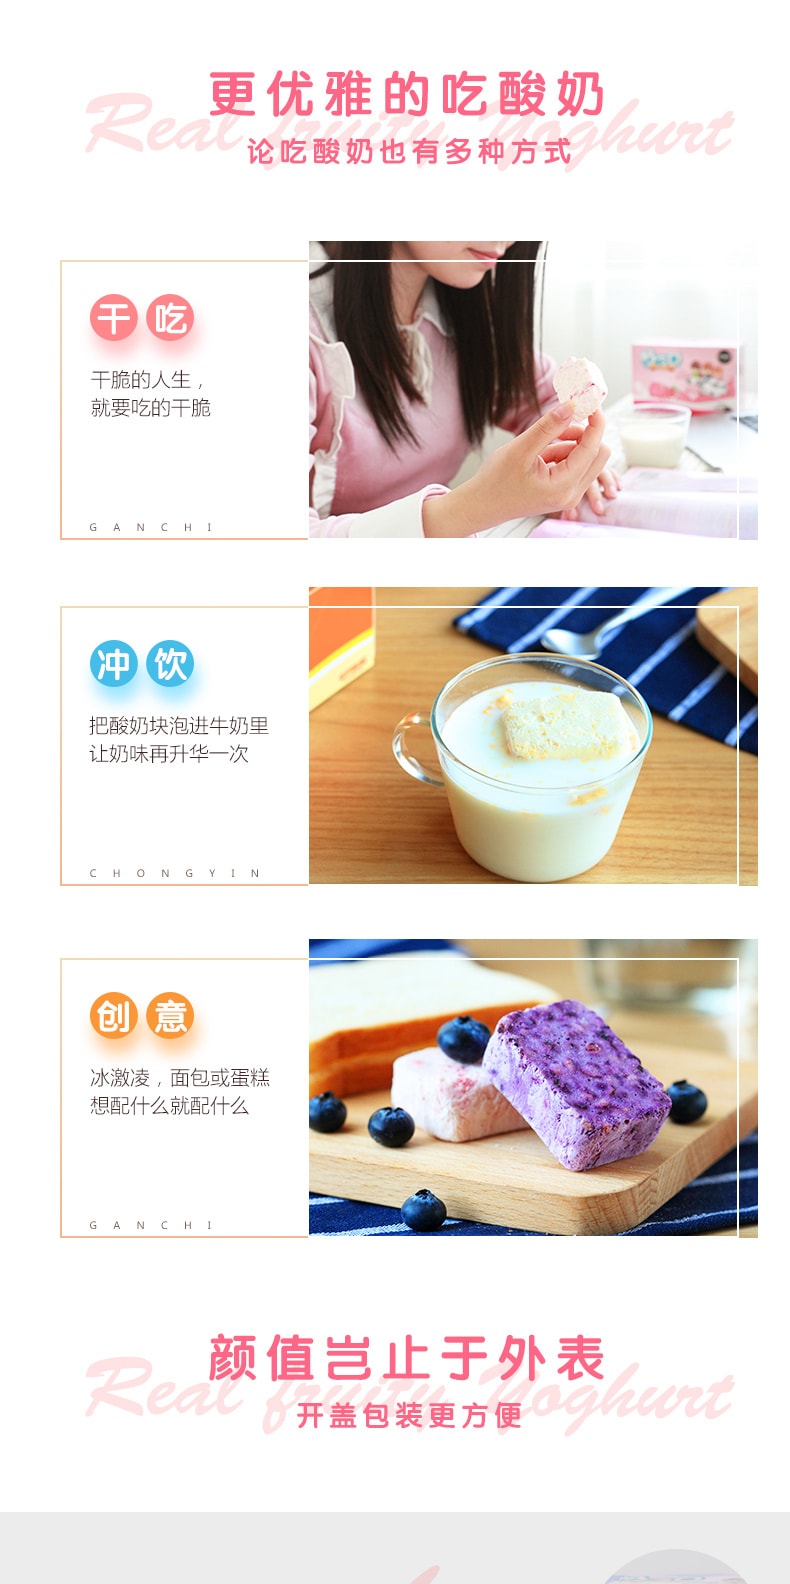 [China Direct Mail] yogurt cubes yellow peach freeze-dried yogurt cubes 54g